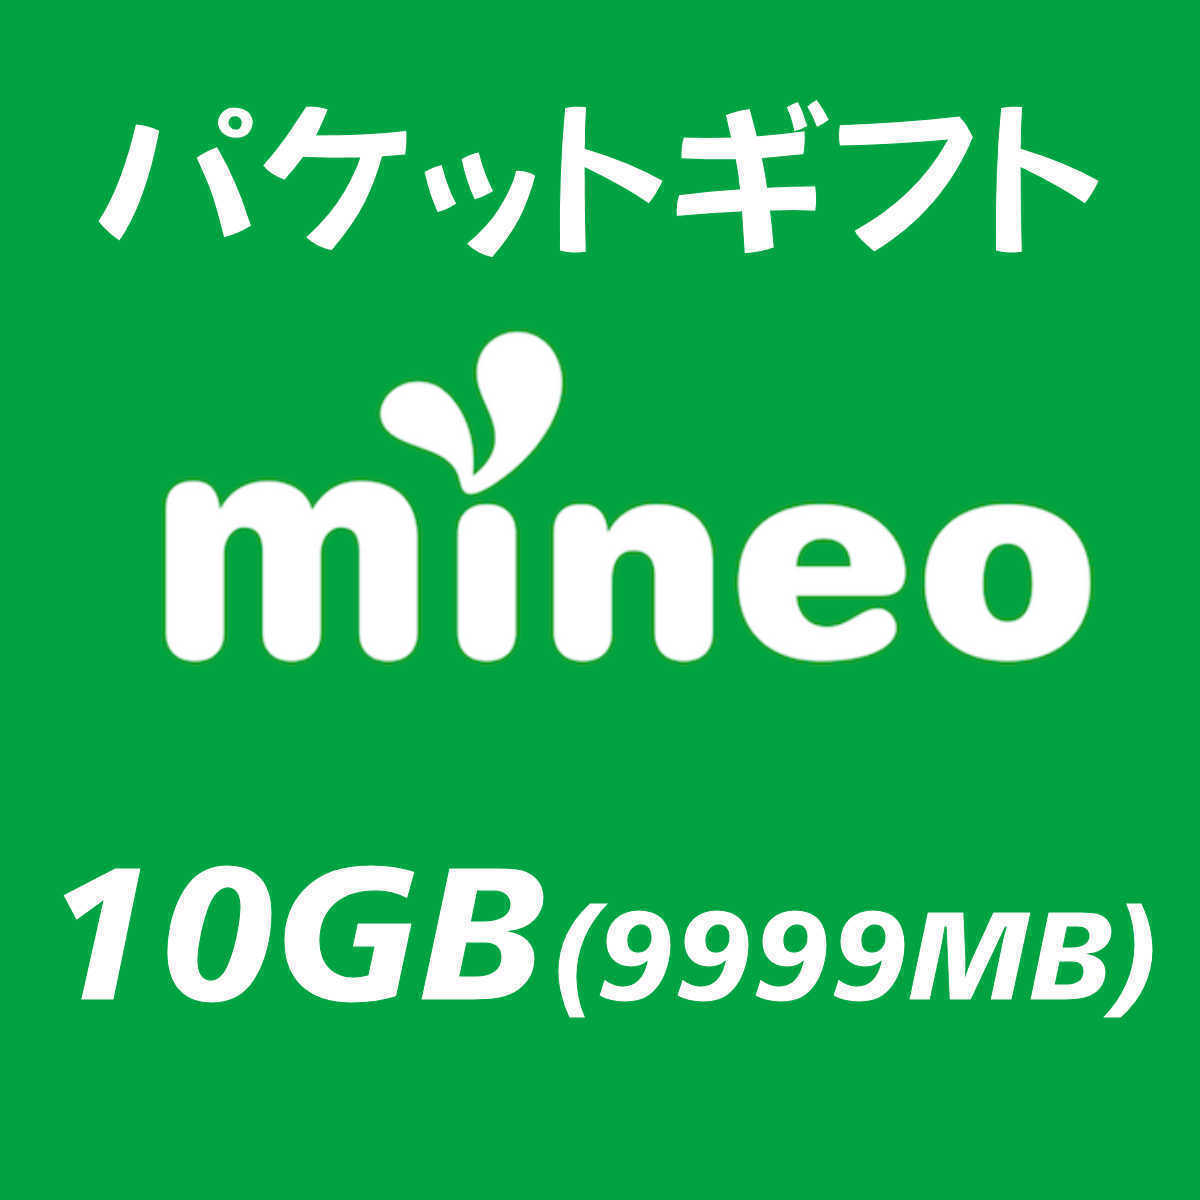 10GB(9999MB) マイネオ パケットギフト mineoの画像1